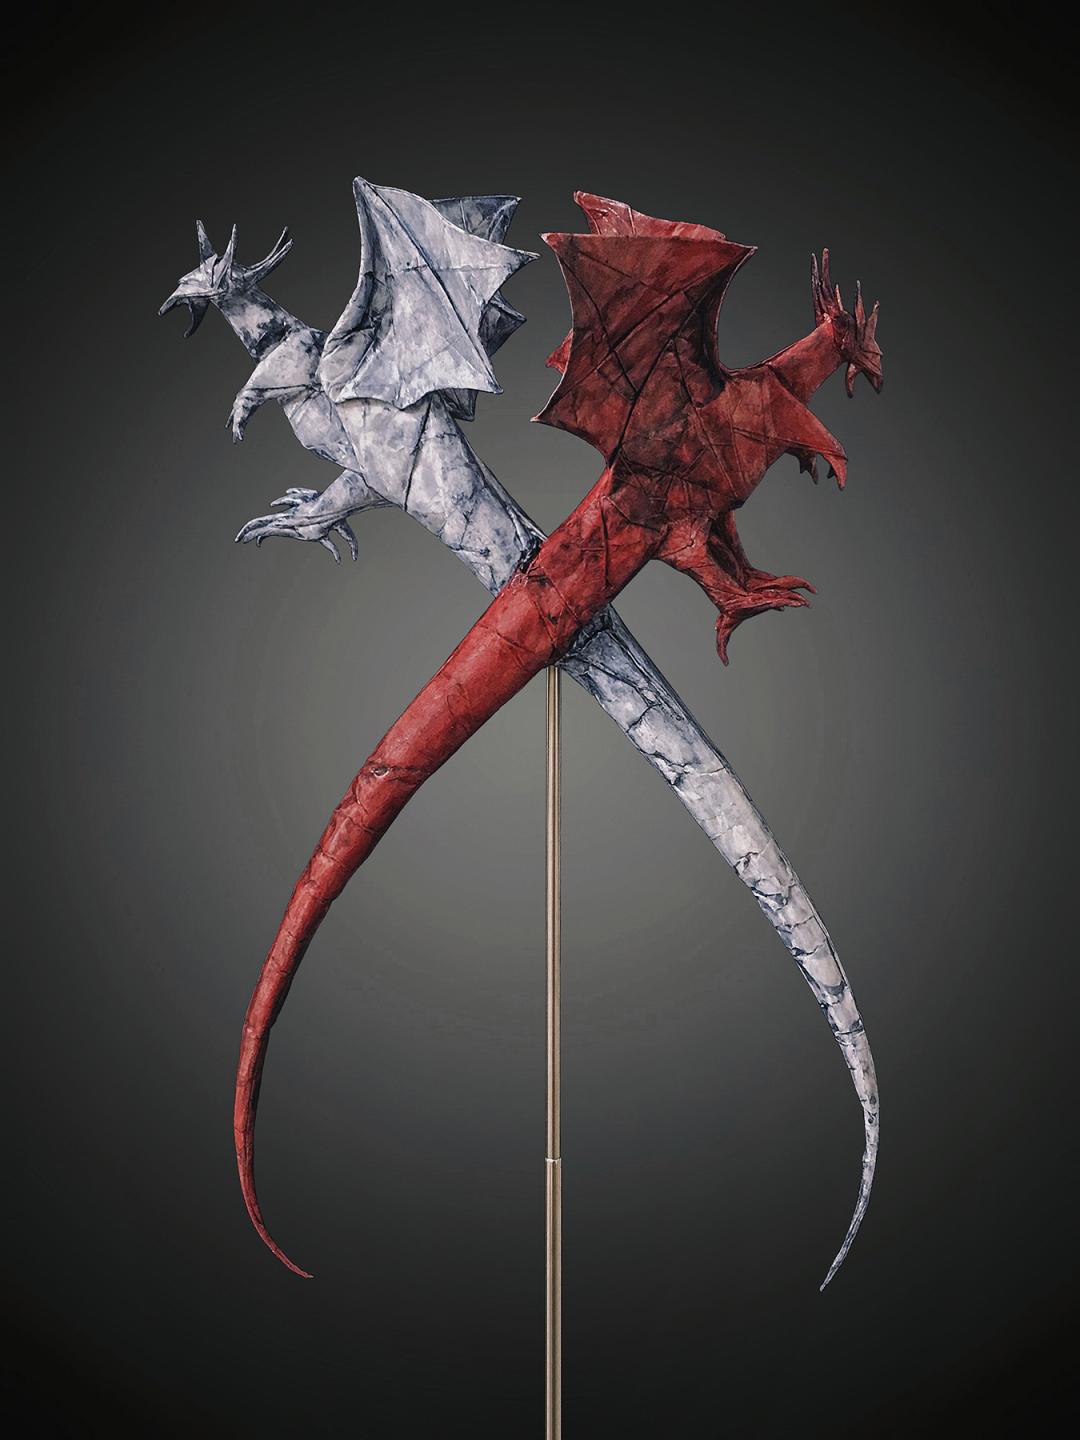 white dragon vs red dragon